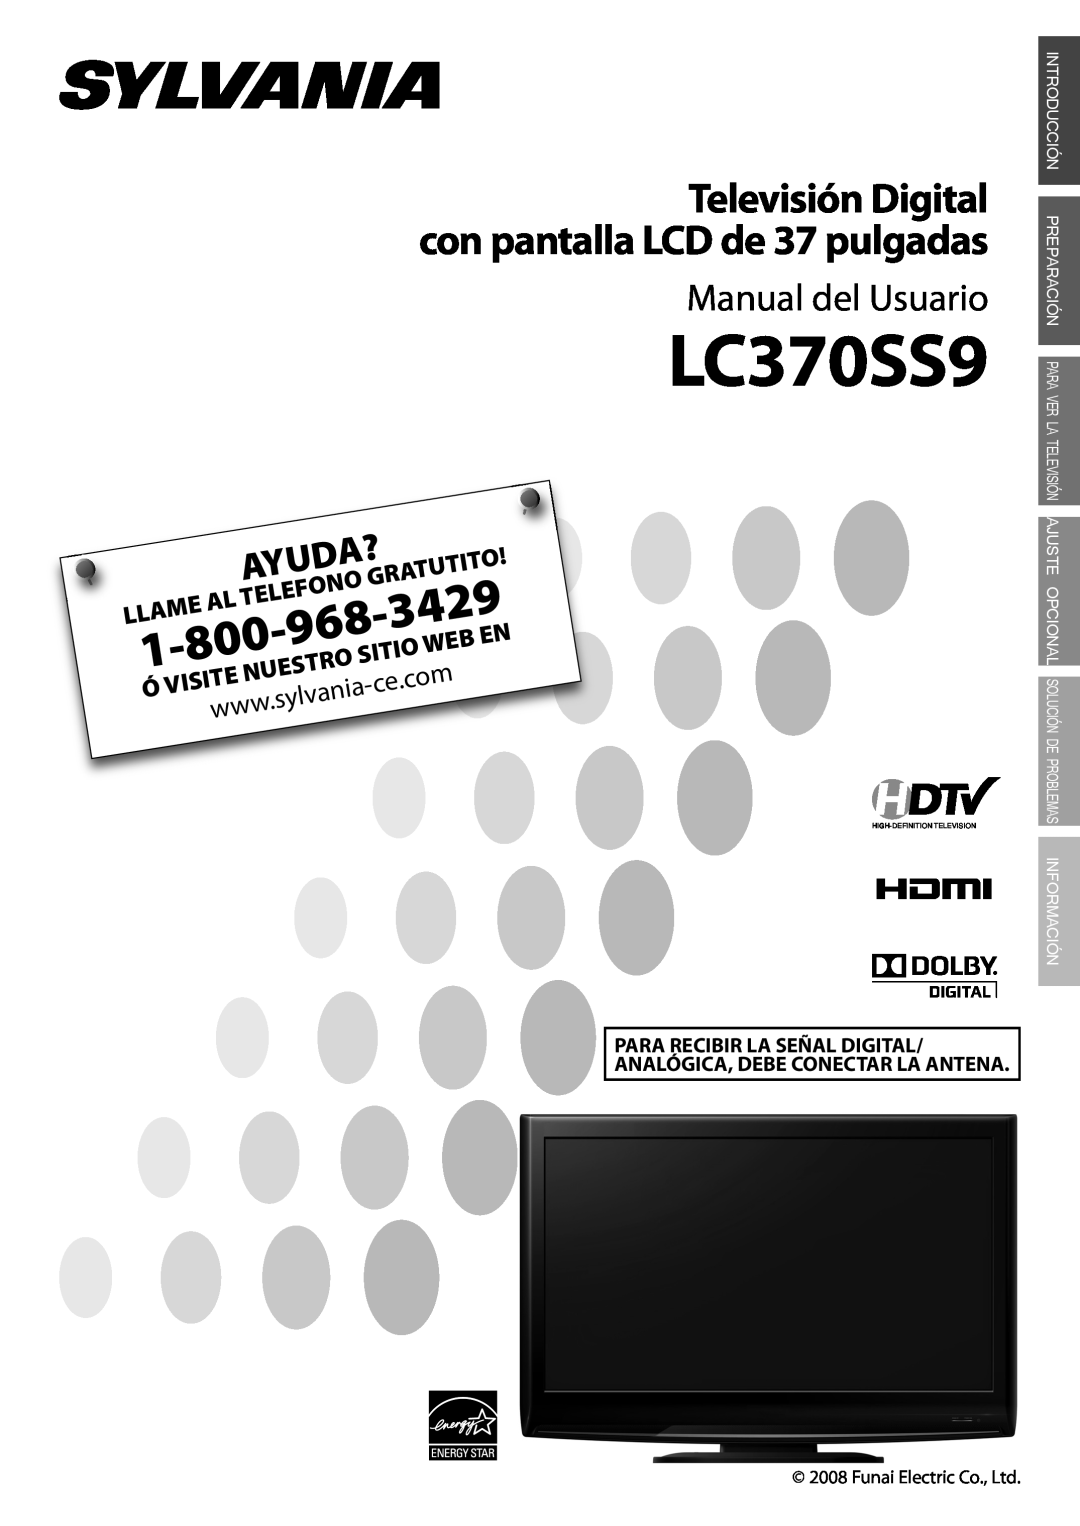 Sylvania LC370SS9 Tutito, Sitio, 3429, Manual del Usuario, Televisión Digital con pantalla LCD de 37 pulgadas, Ayuda? 